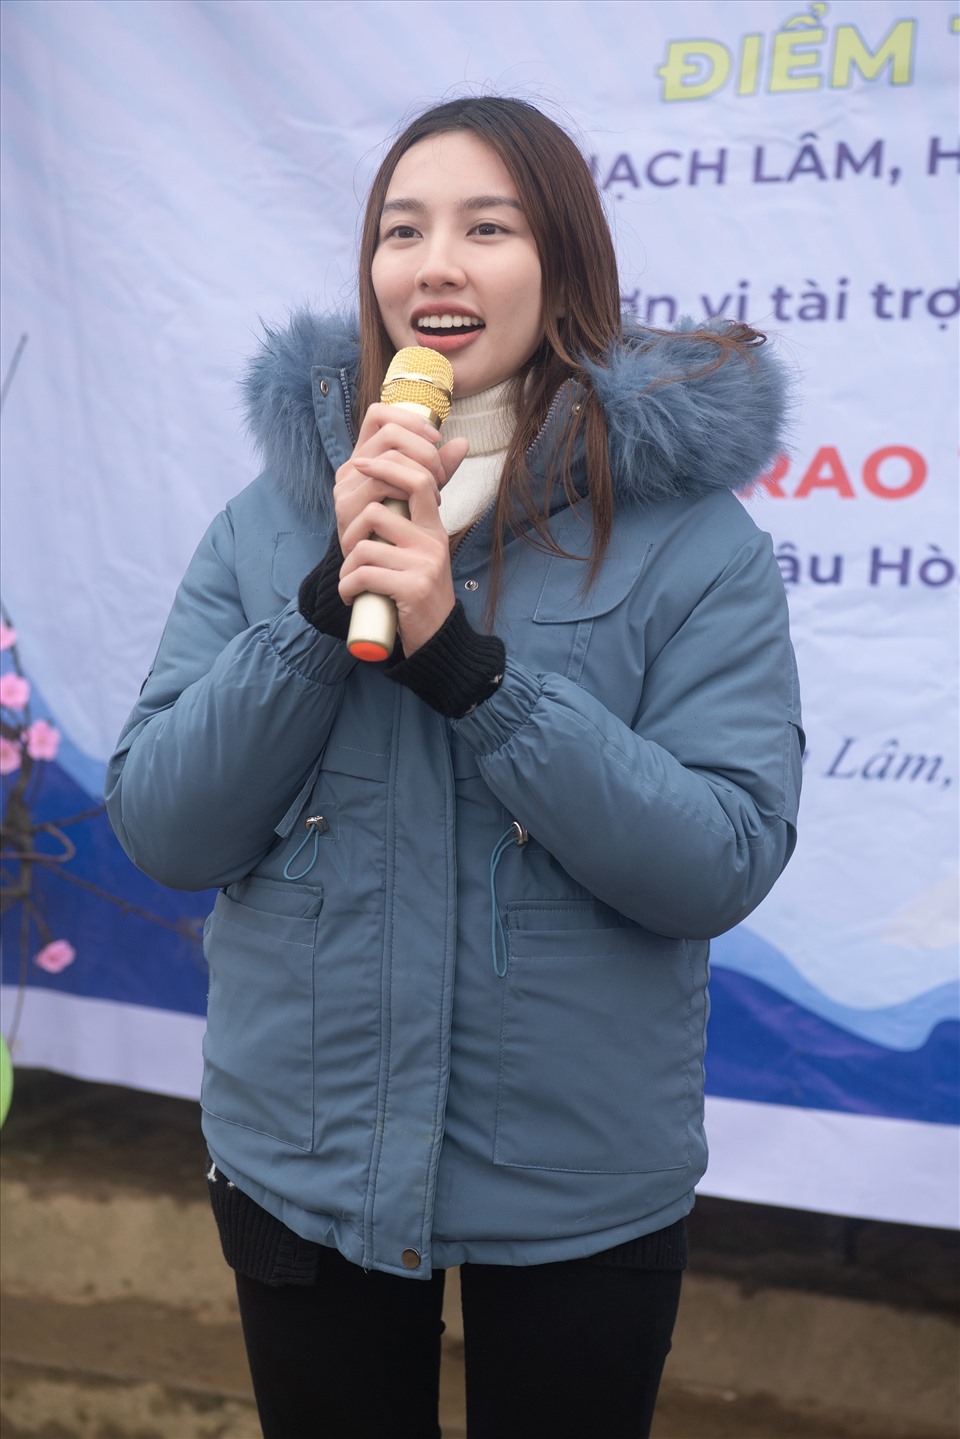 Chia sẻ về chuyến đi lần này, Thùy Tiên cho biết đây là lần đầu tiên cô đến Cao Bằng và cũng là lần đầu tiên thực hiện một dự án ở một nơi xa xôi như vậy.